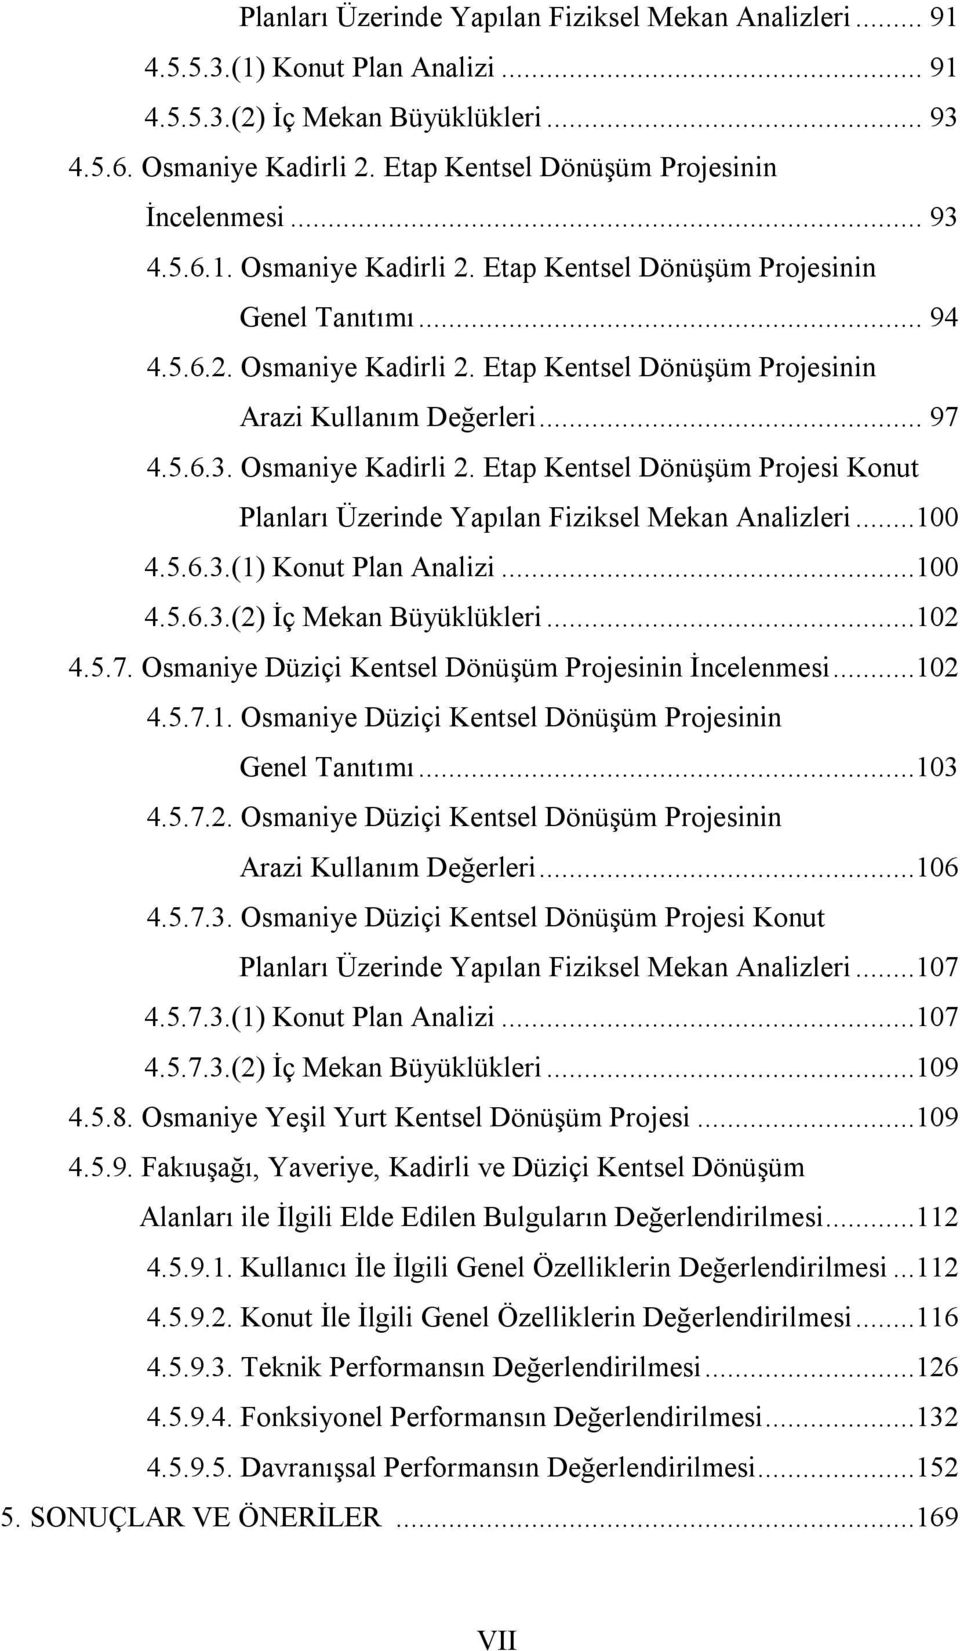 .. 97 4.5.6.3. Osmaniye Kadirli 2. Etap Kentsel Dönüşüm Projesi Konut Planları Üzerinde Yapılan Fiziksel Mekan Analizleri...0 4.5.6.3.(1) Konut Plan Analizi...0 4.5.6.3.(2) İç Mekan Büyüklükleri...2 4.